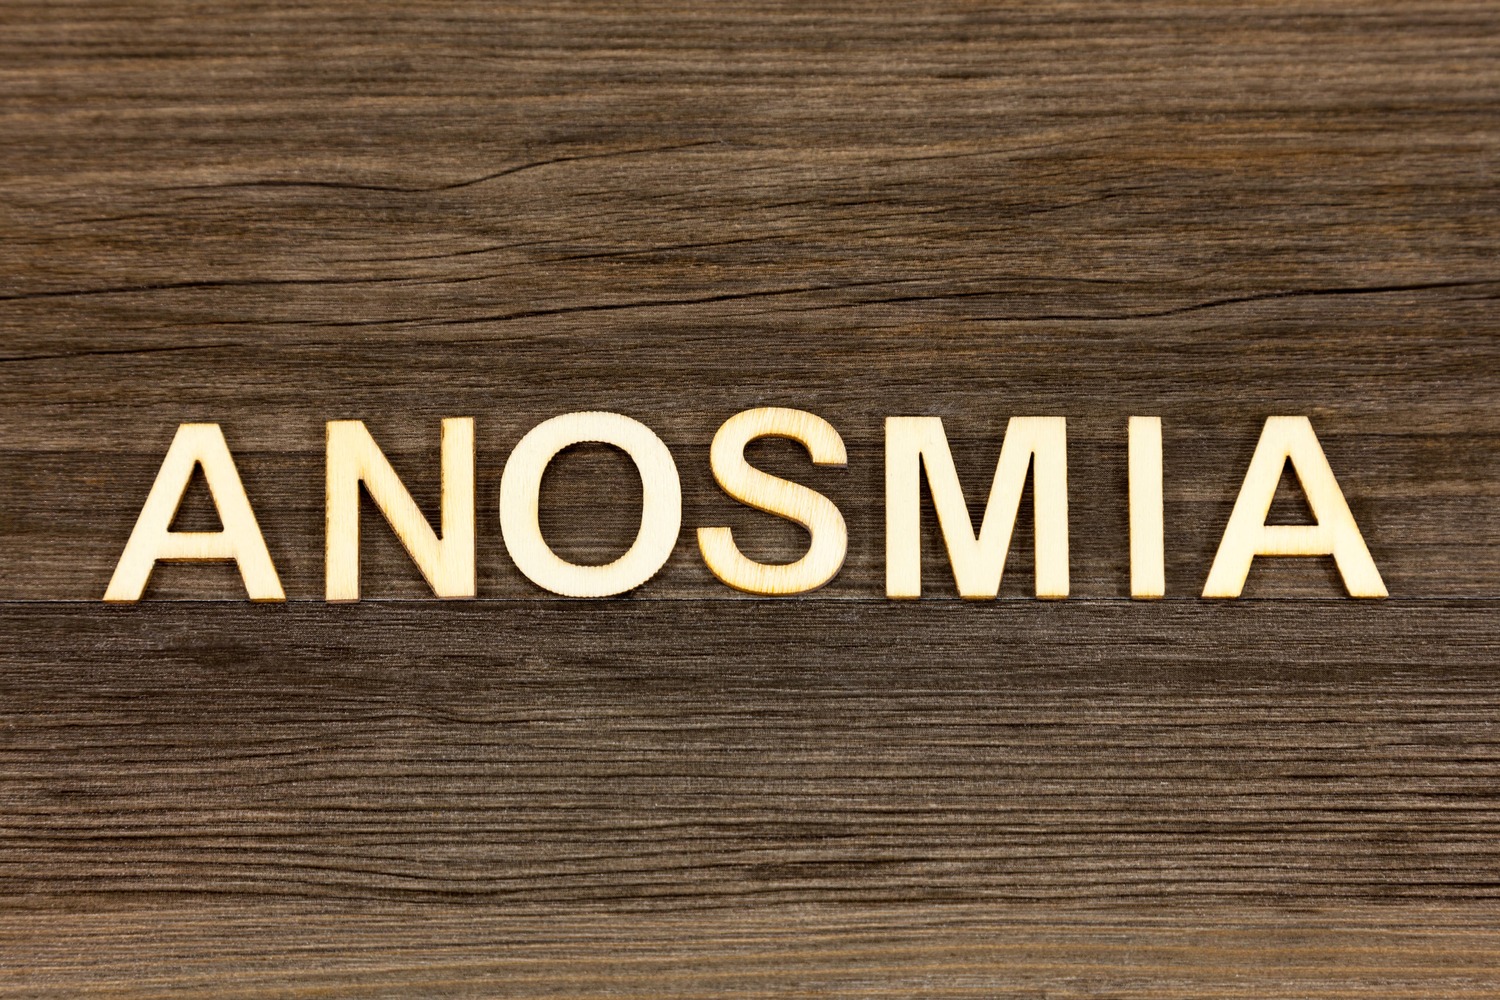 Mengenal Anosmia, Salah Satu Gejala Covid-19 yang Harus Diwaspadai